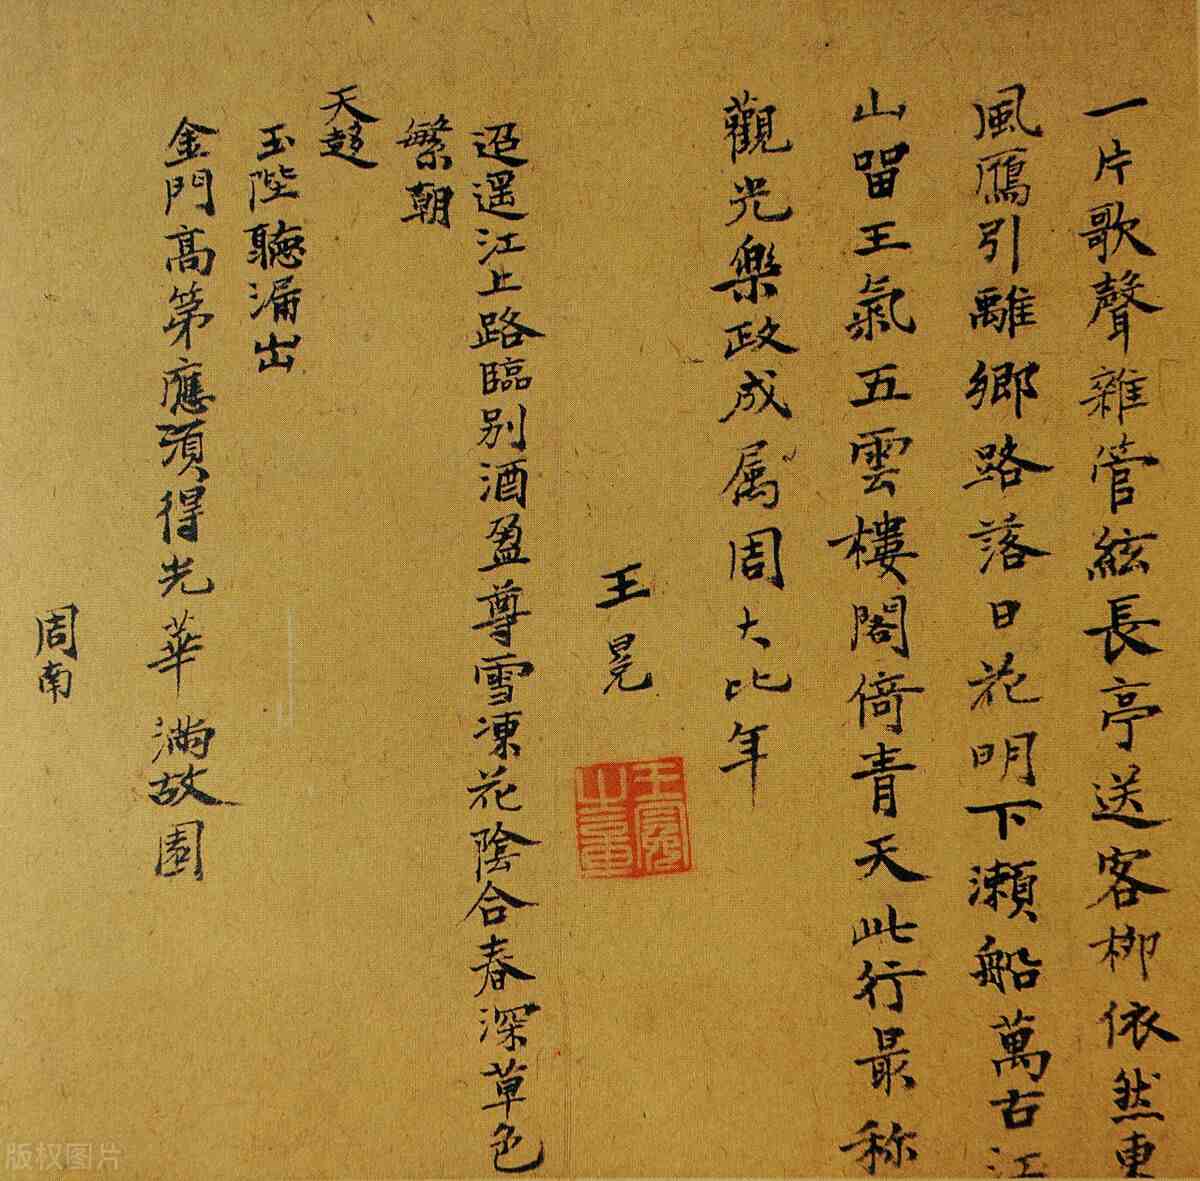 《儒林外史》之王冕篇：吴敬梓笔下一个理想的中国读书人形象